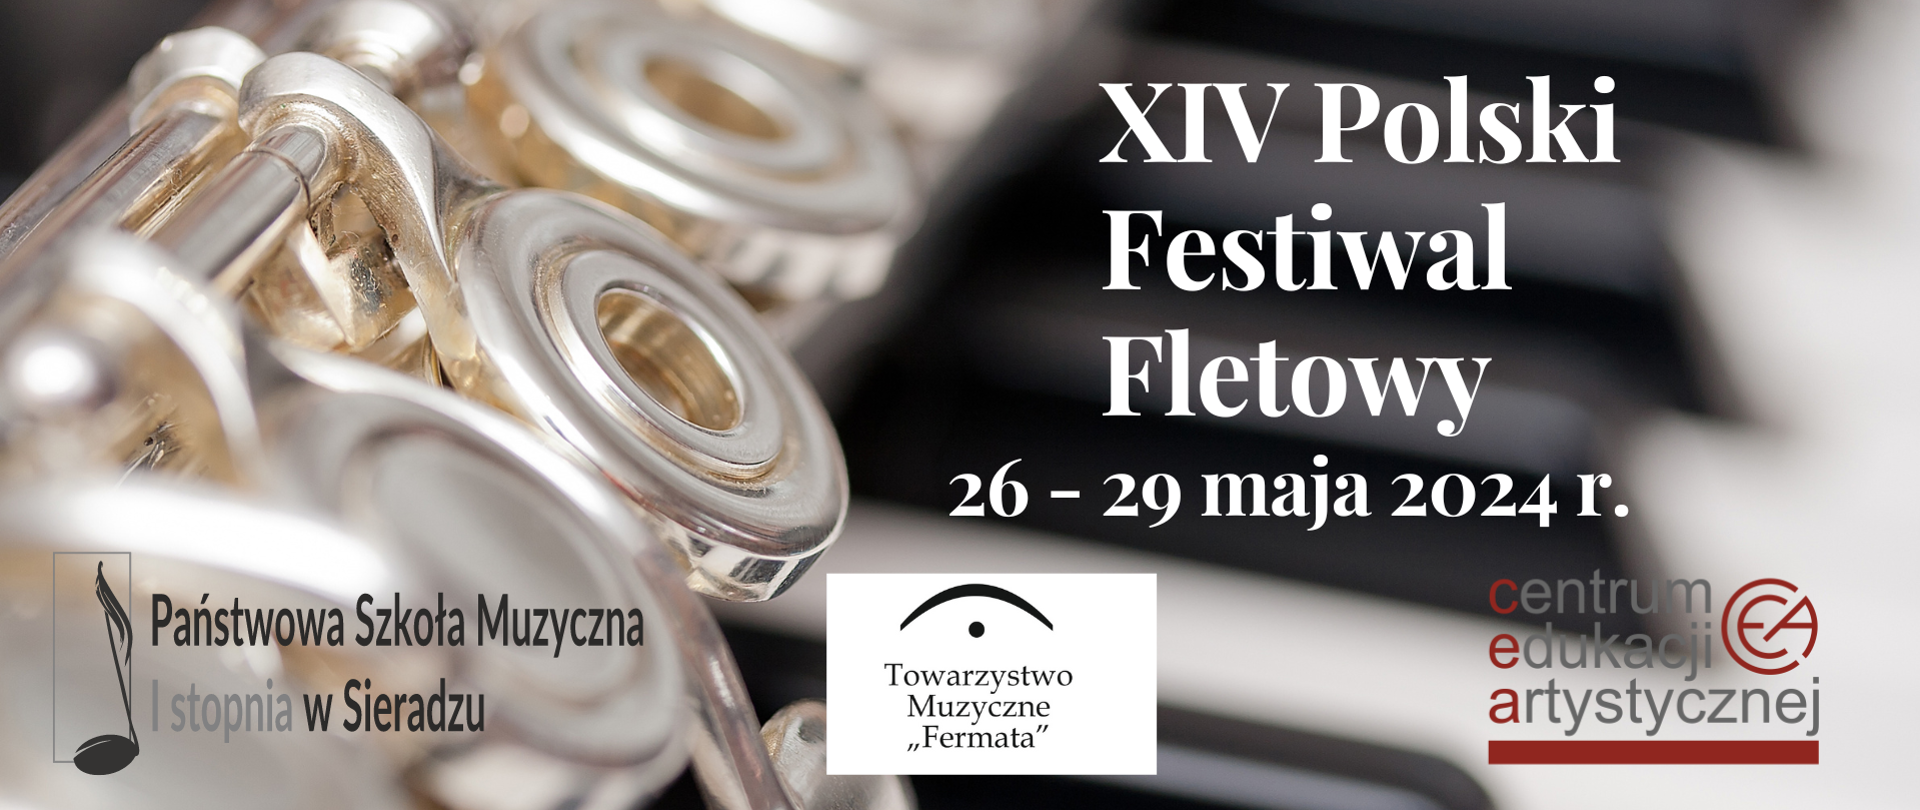 Po lewej stronie widać flet w zbliżeniu, obok widnieje napis XIV Polski Festiwal Fletowy 26-29 maja 2024 r.